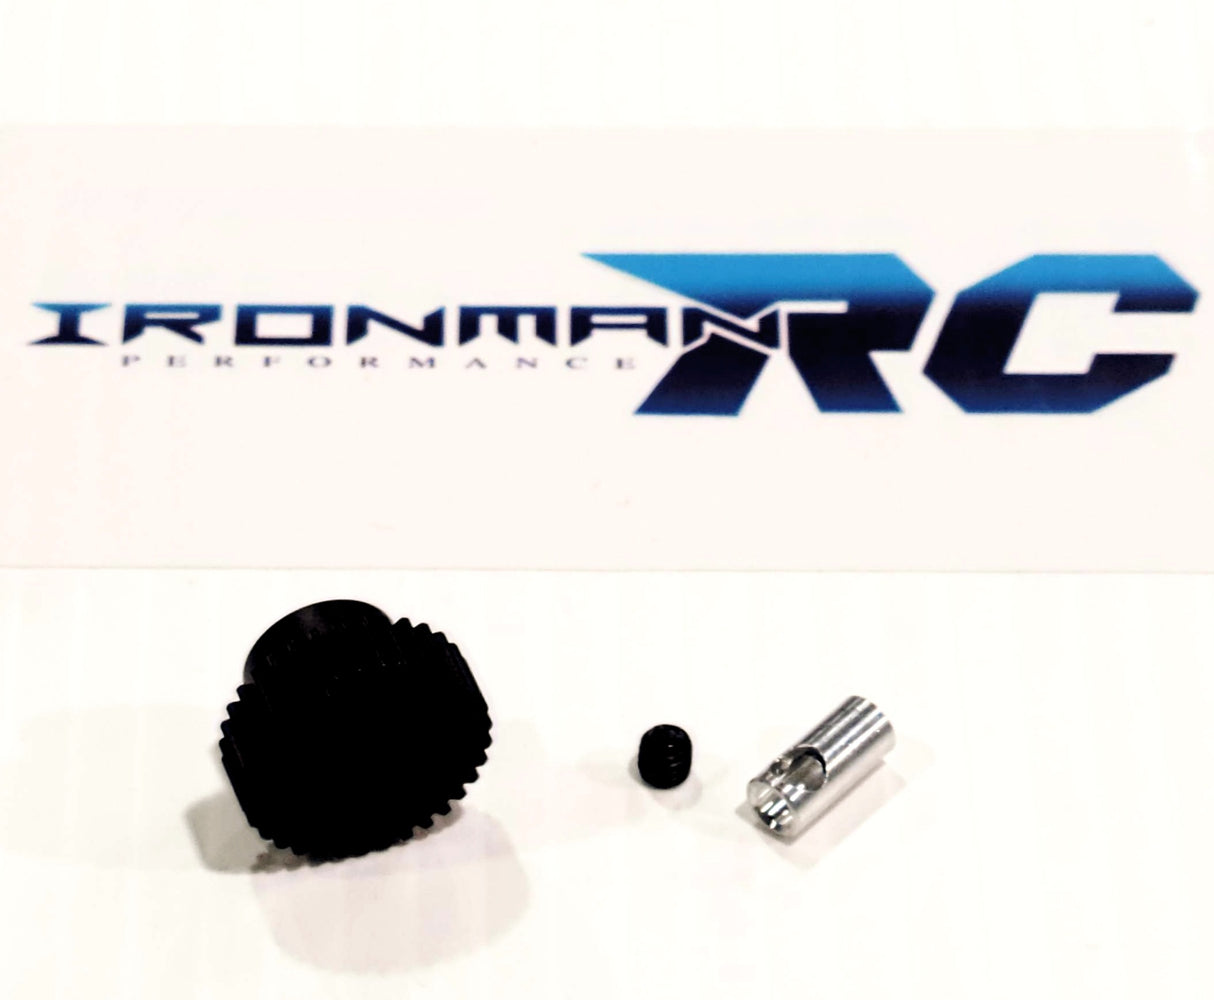 IronManRc Engranaje de piñón de acero endurecido 18t 48P de 5 mm y 3 mm